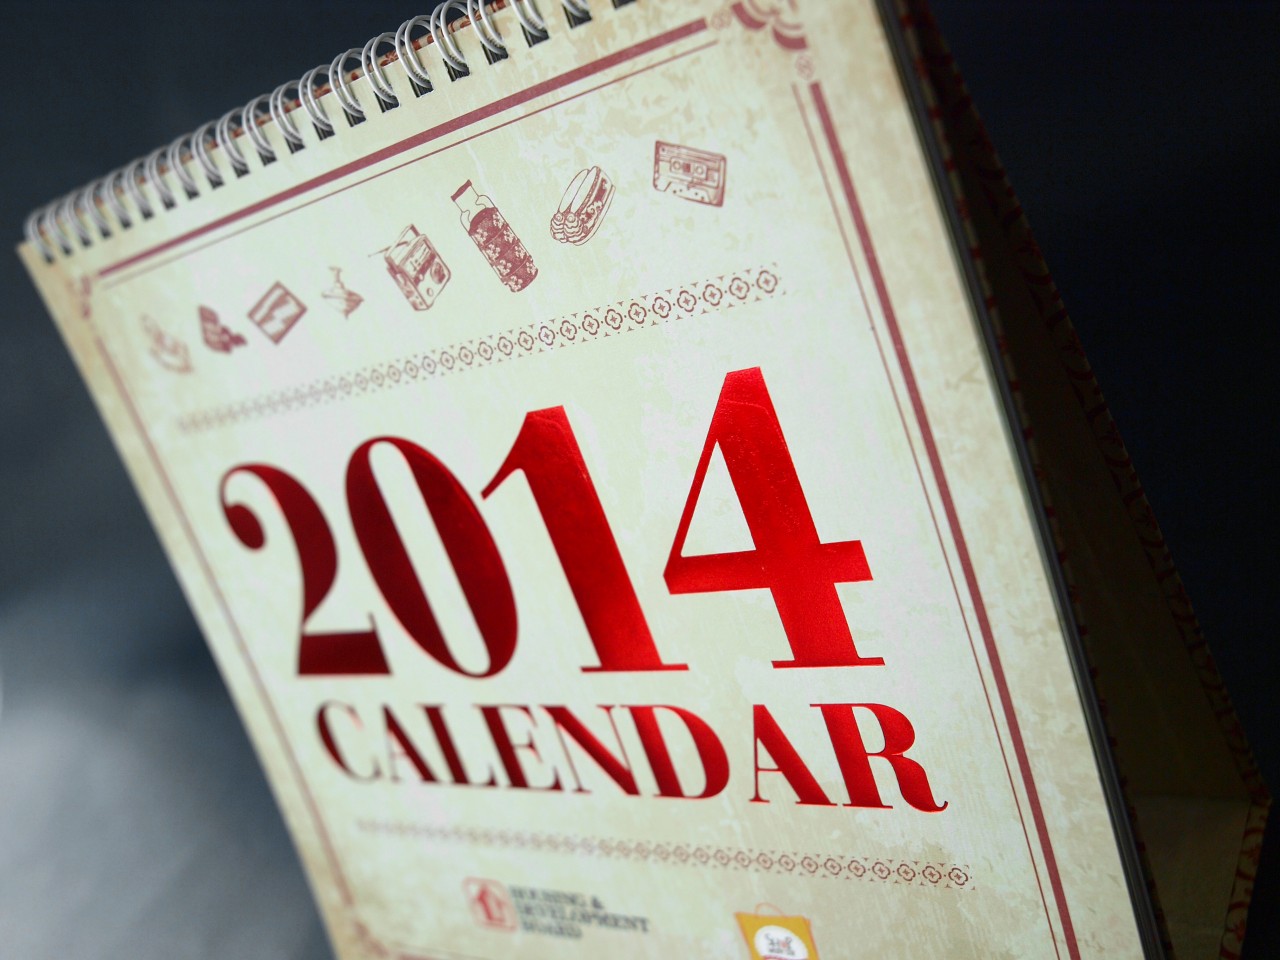 Housing Development Board Calendar 2014